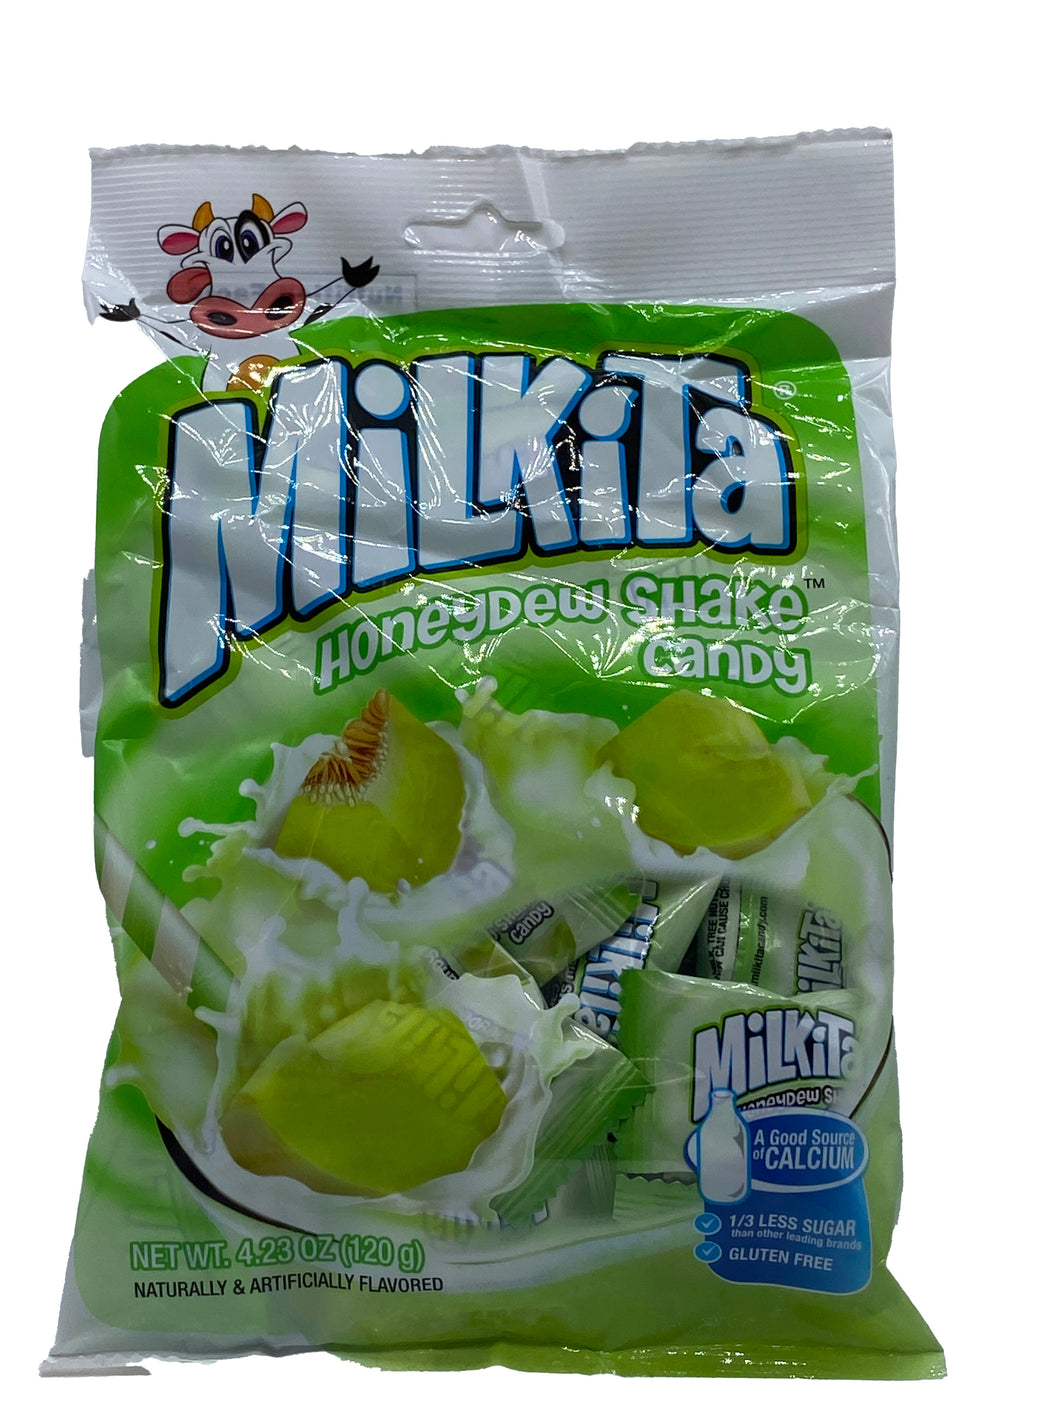 Milkita Honeydew Shake Candy